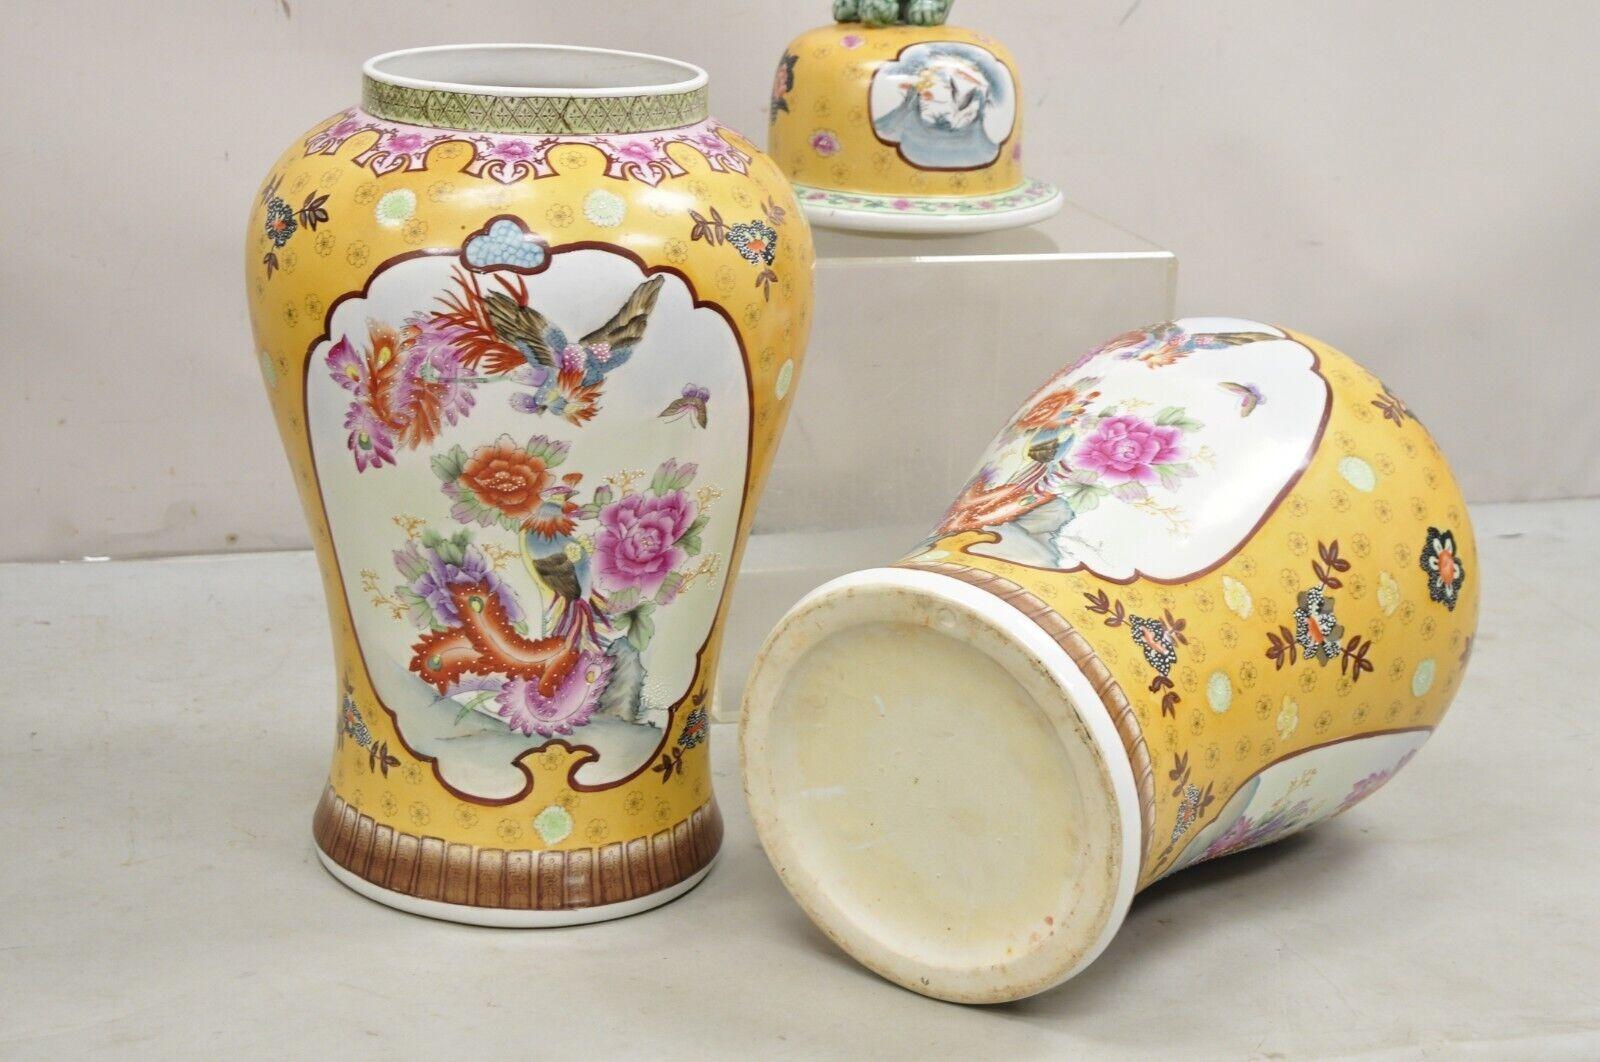 Vintage Chinese Porcelain Large Foo Dog Covered Temple Jar Ginger Jars - a Pair For Sale 4